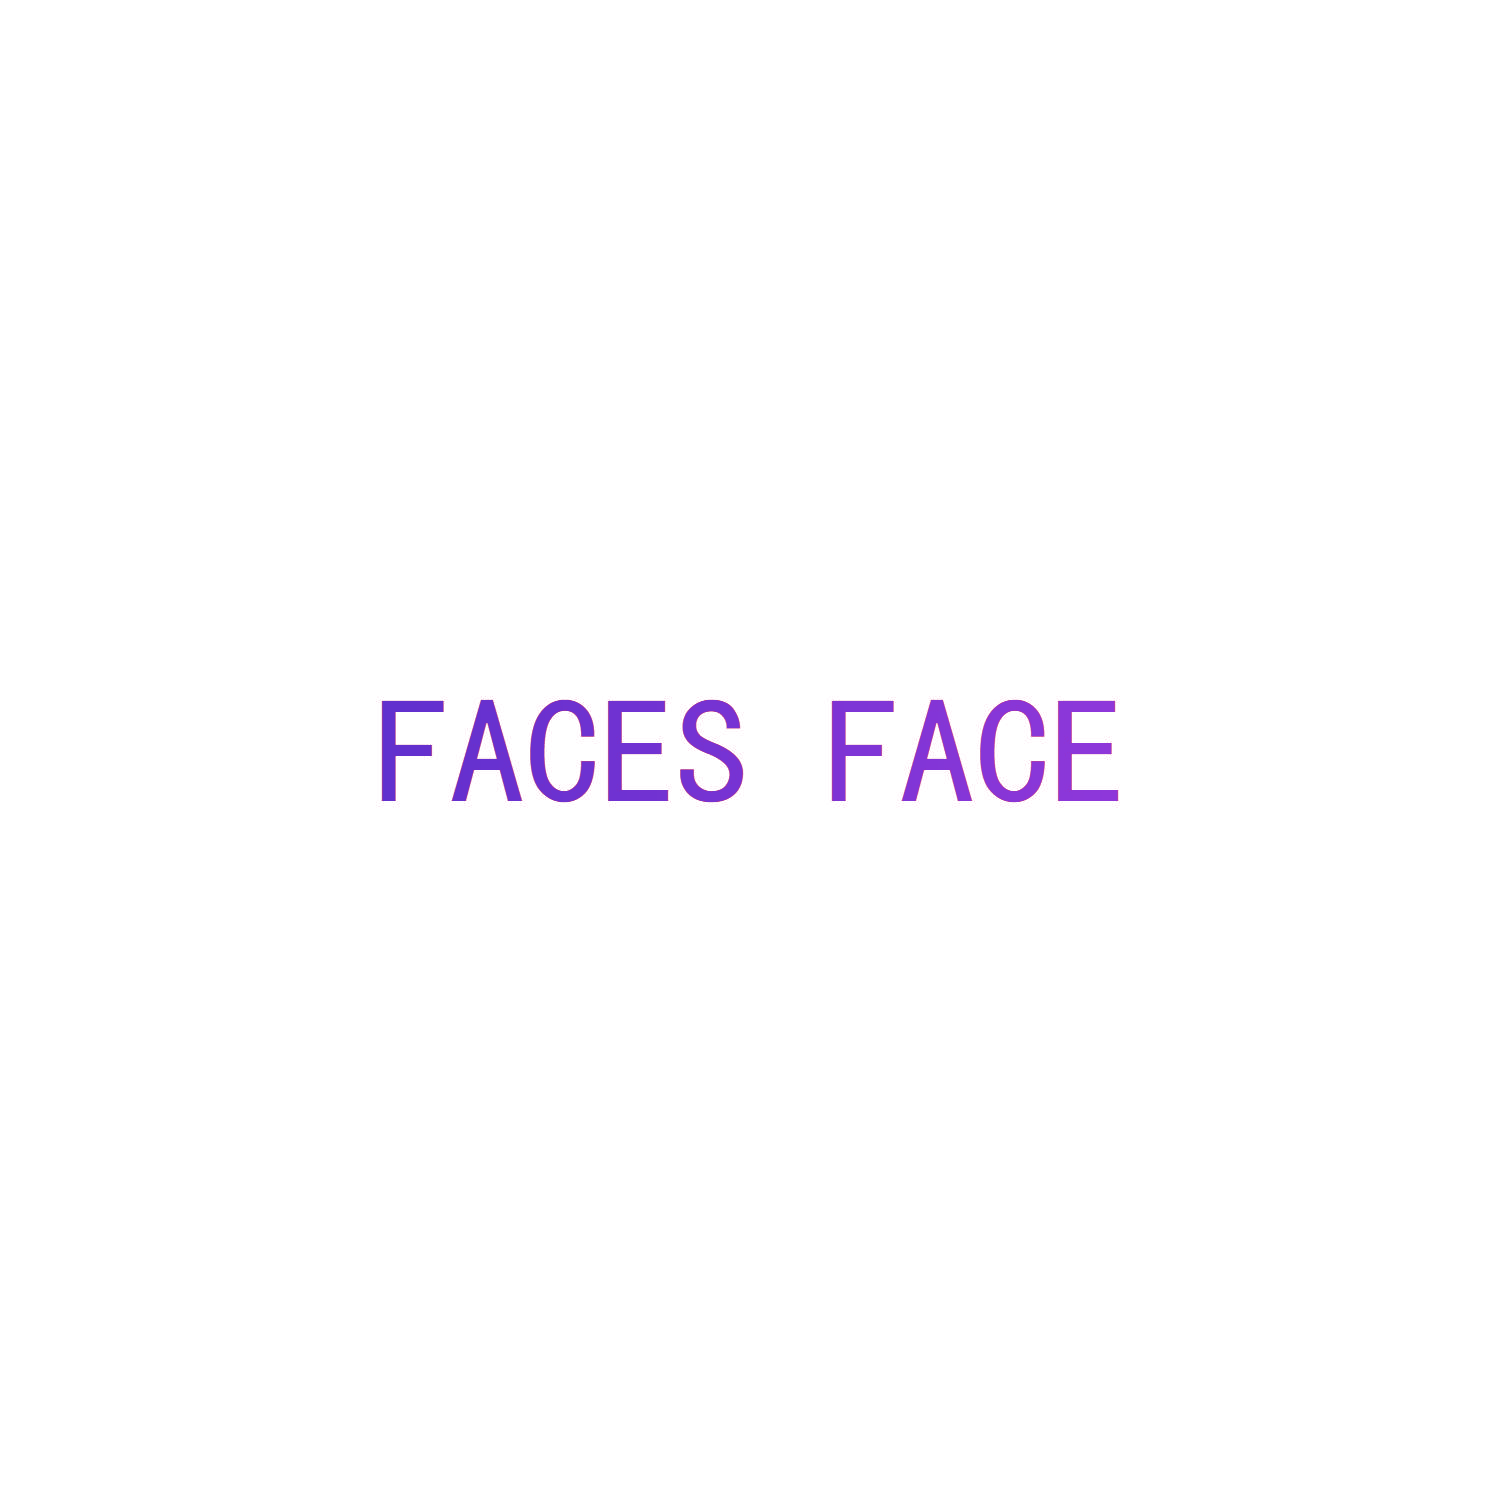 FACES FACE